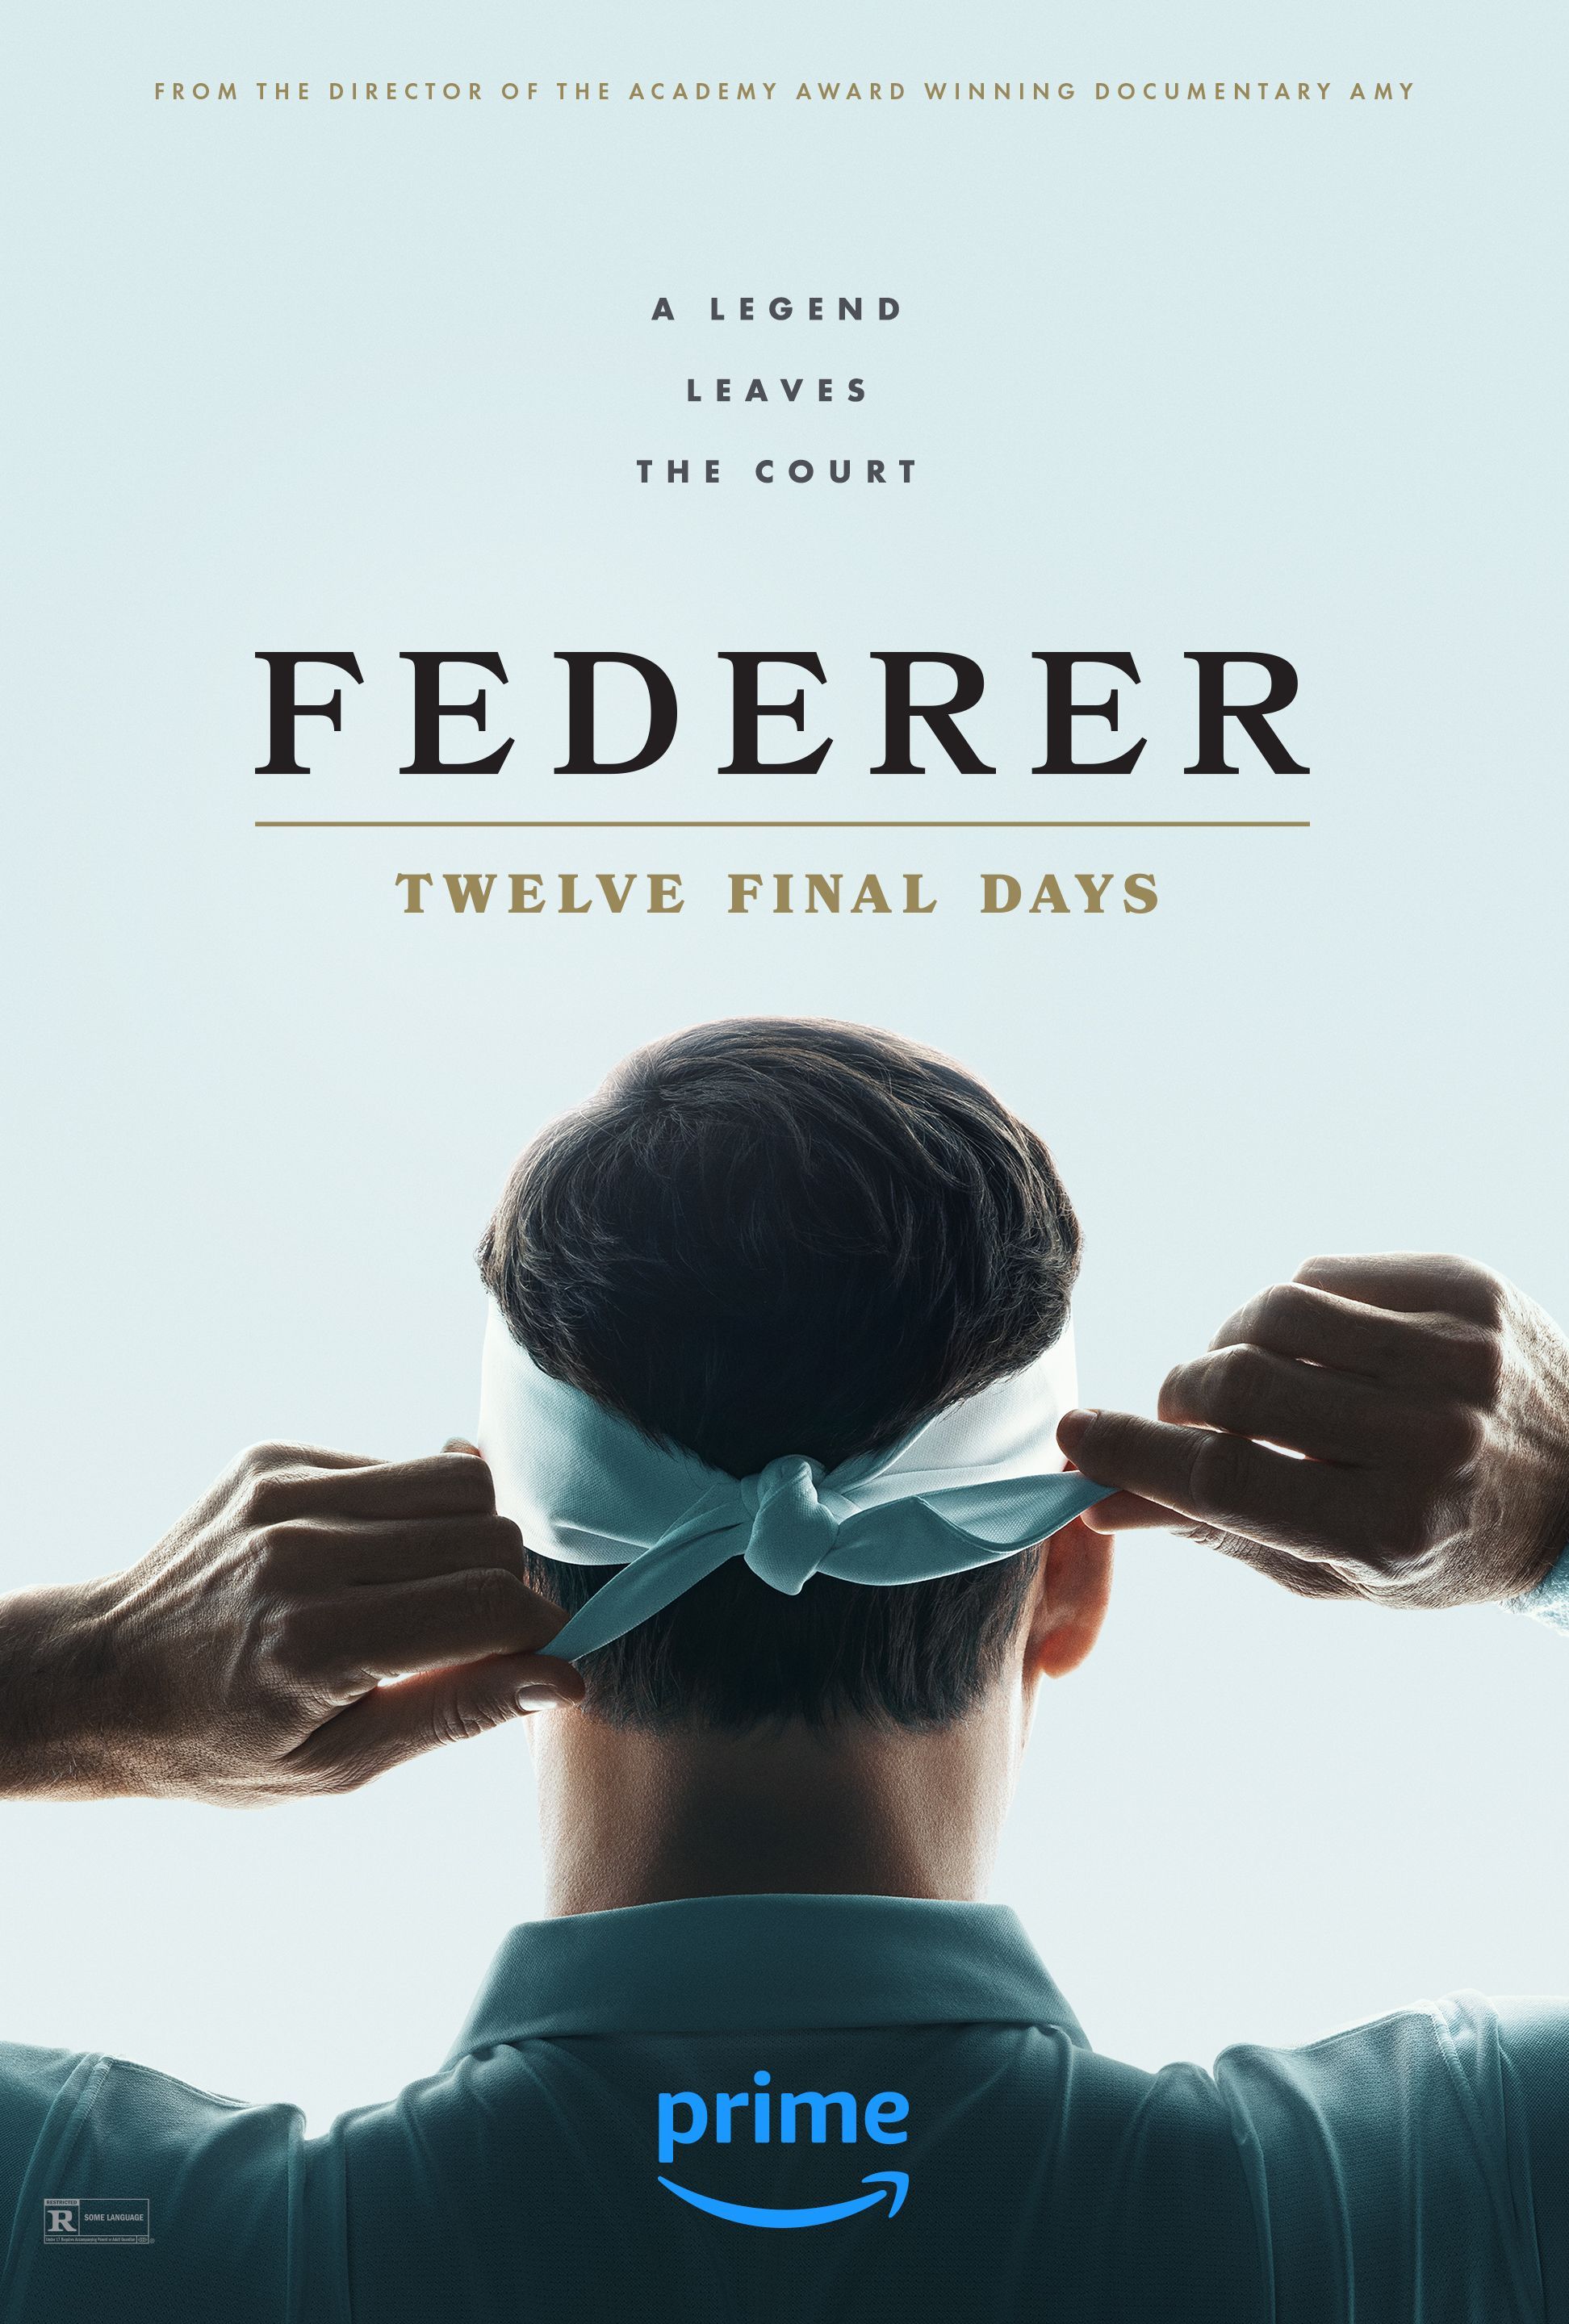 Как посмотреть документальный фильм Prime о Роджере Федерере «Двенадцать последних дней»